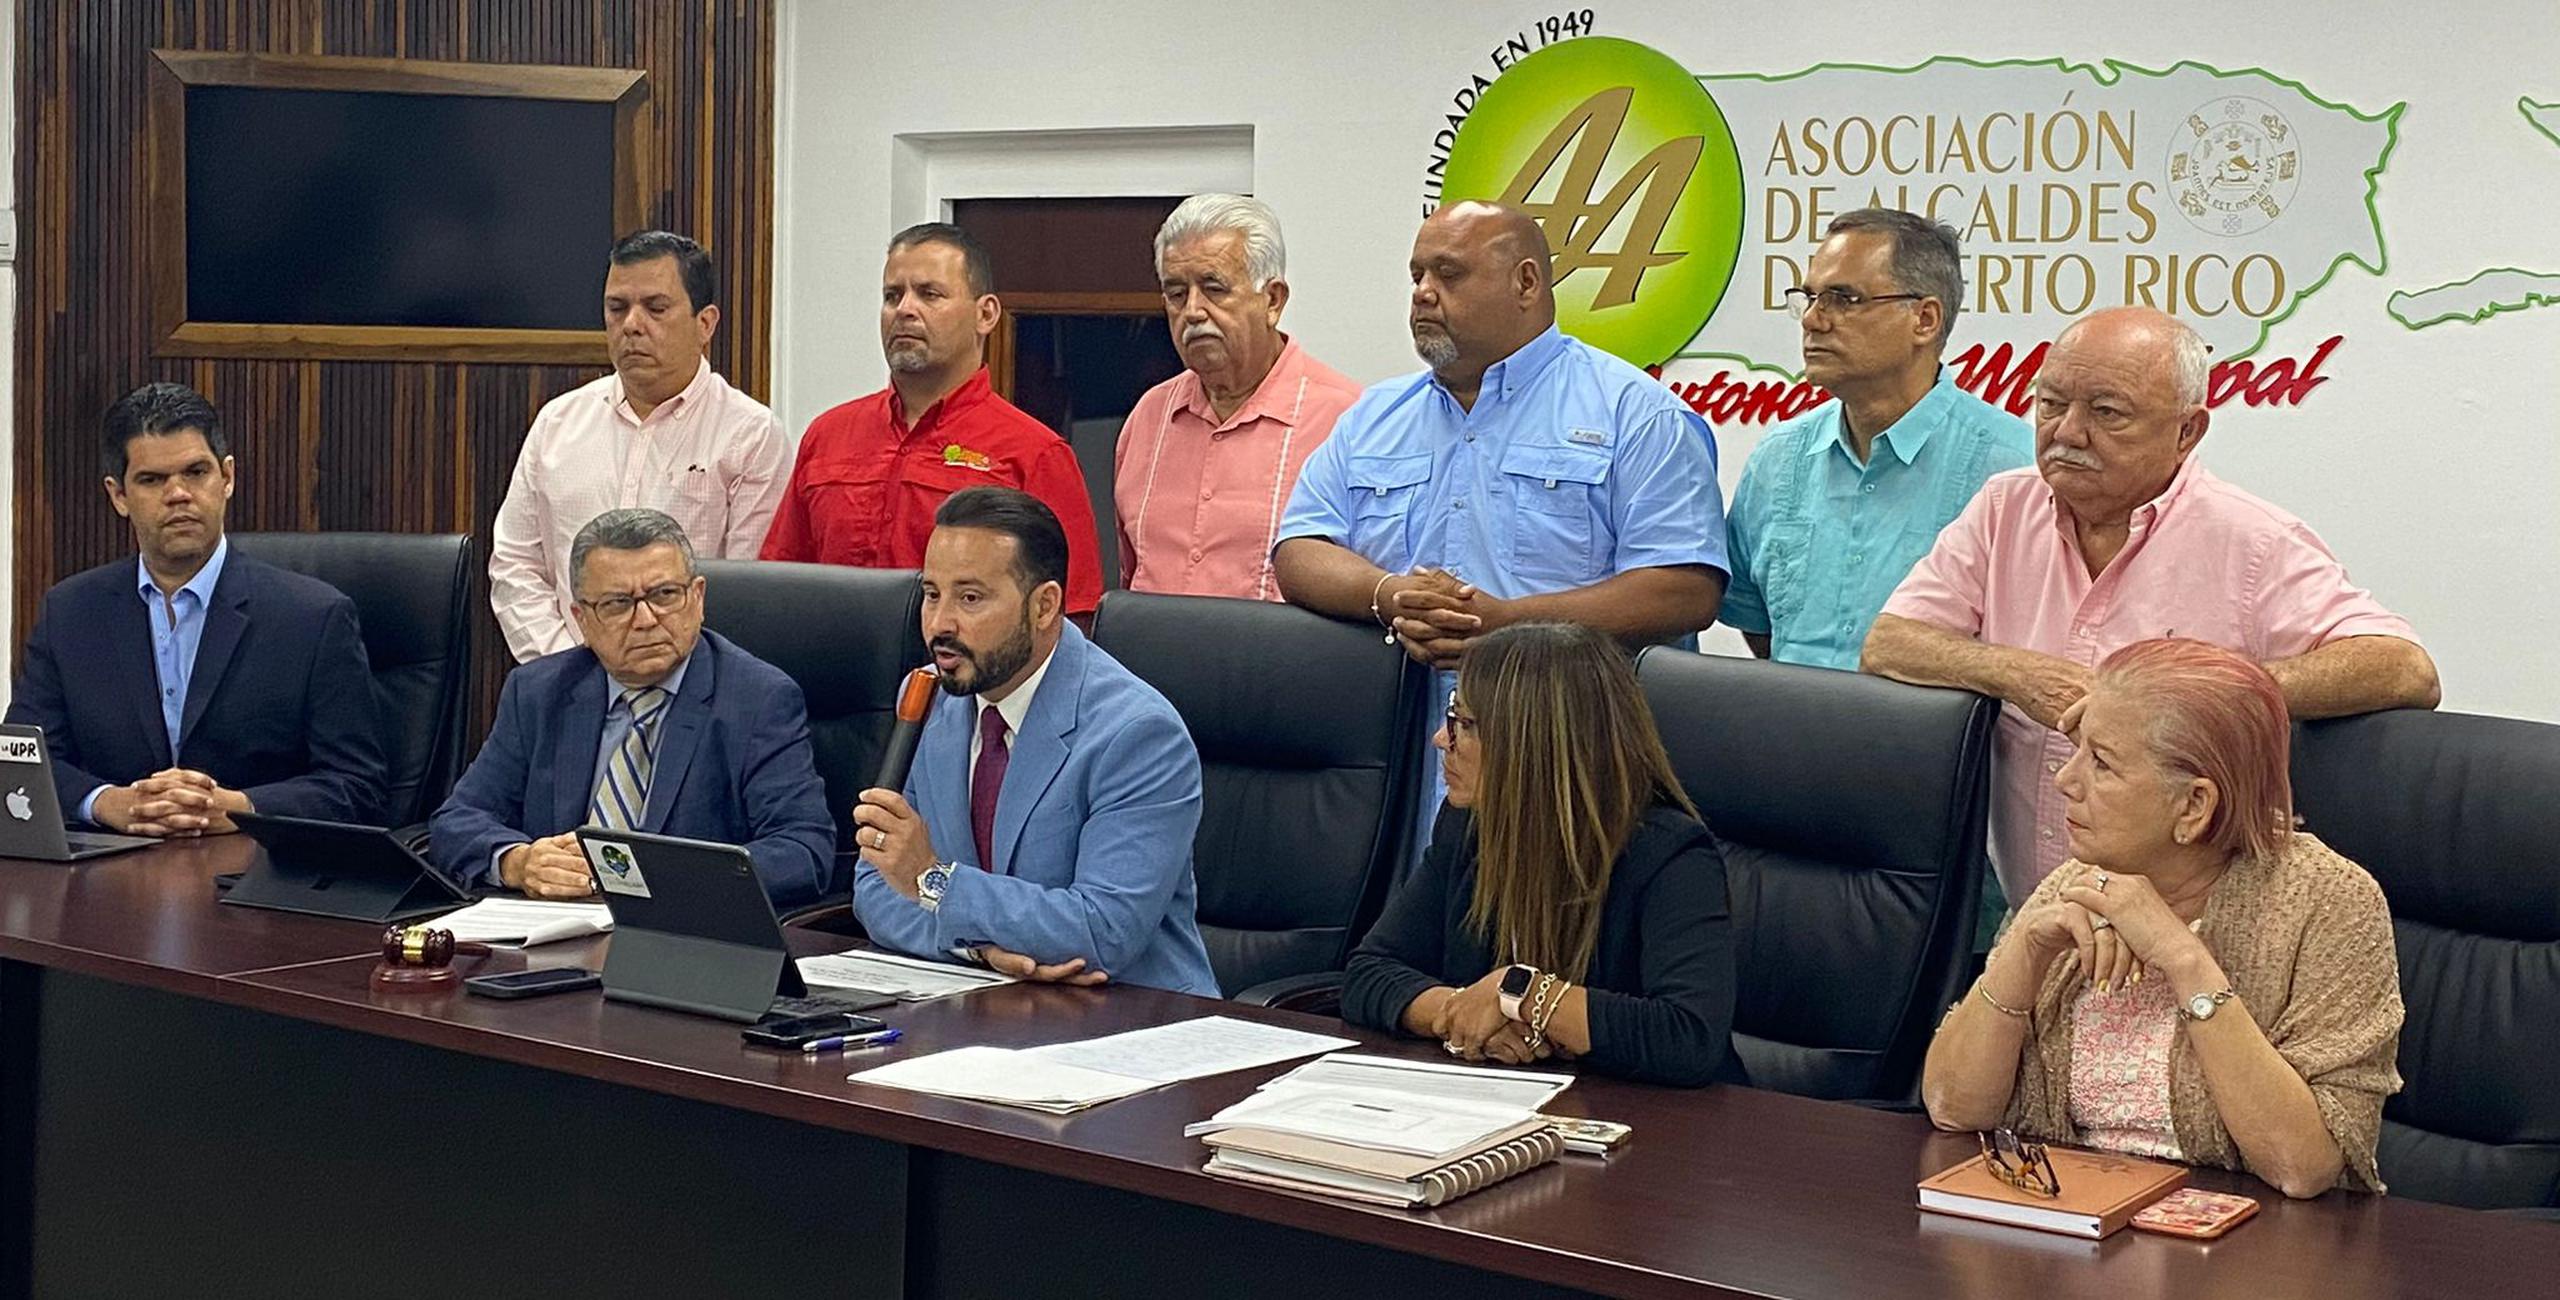 Luis Javier Hernández hizo el anuncio tras una reunión de emergencia que celebró la Asociación de Alcaldes.